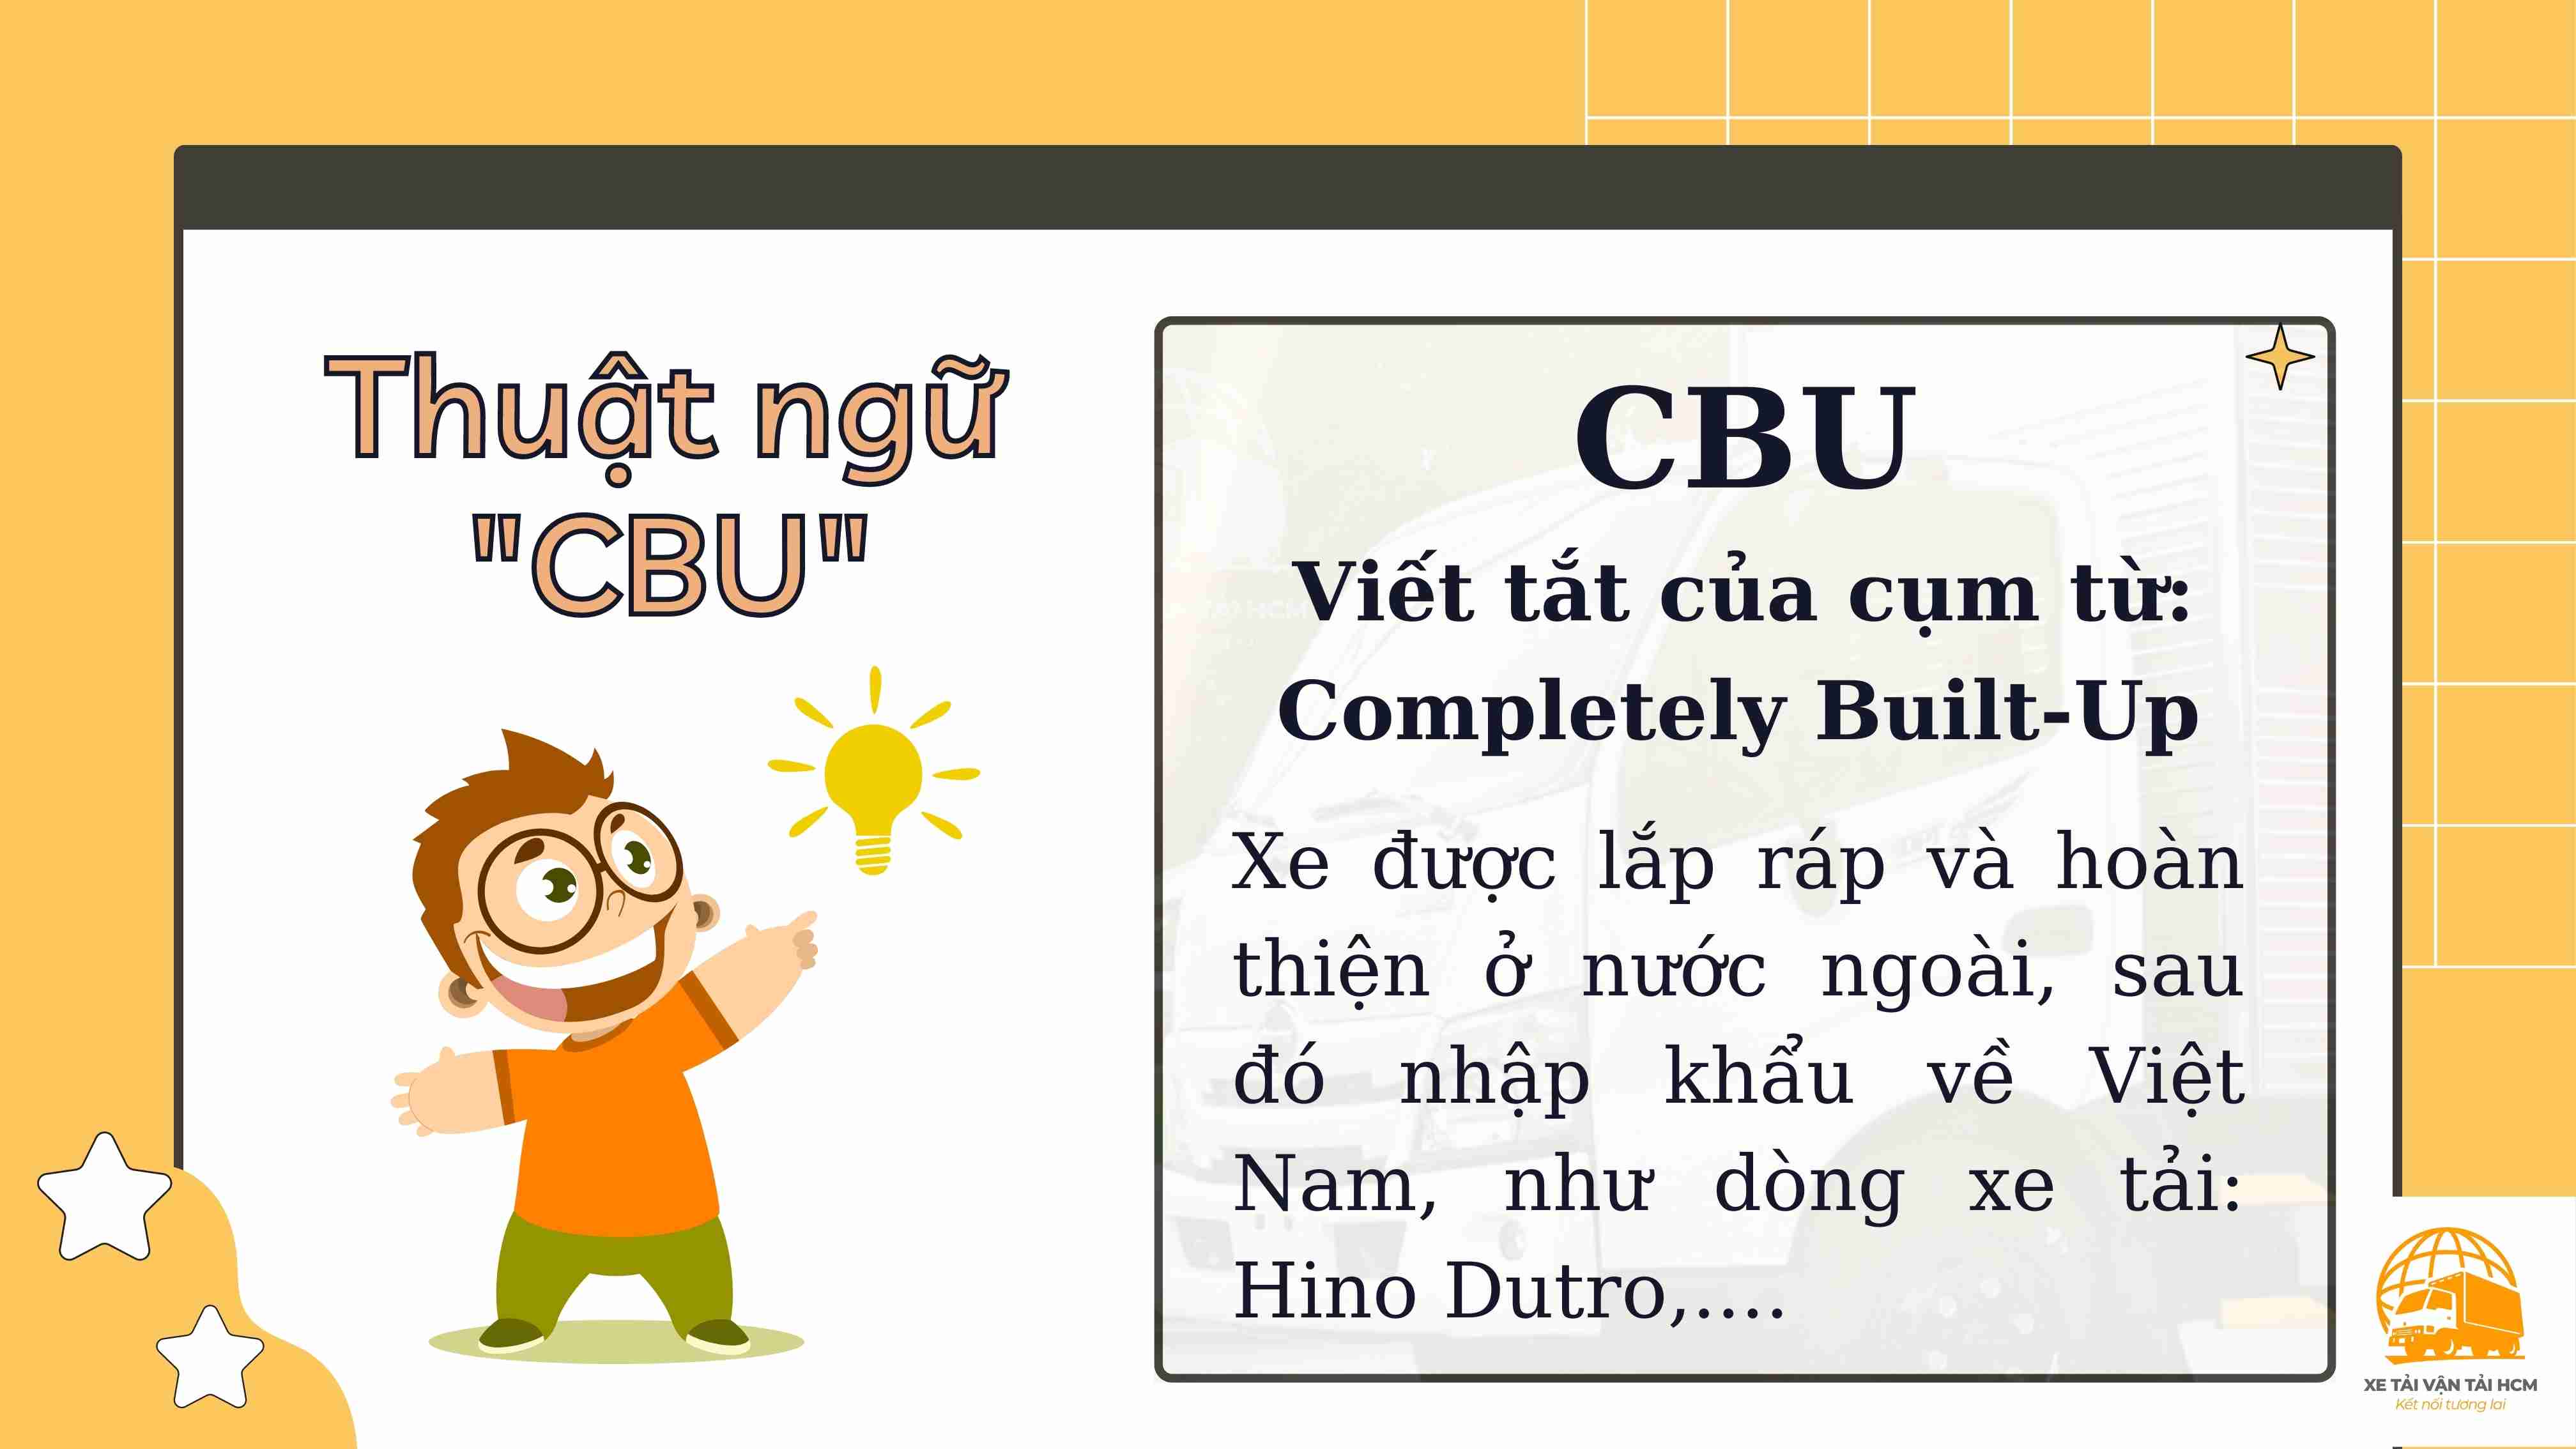 Thuật ngữ CBU là gì?